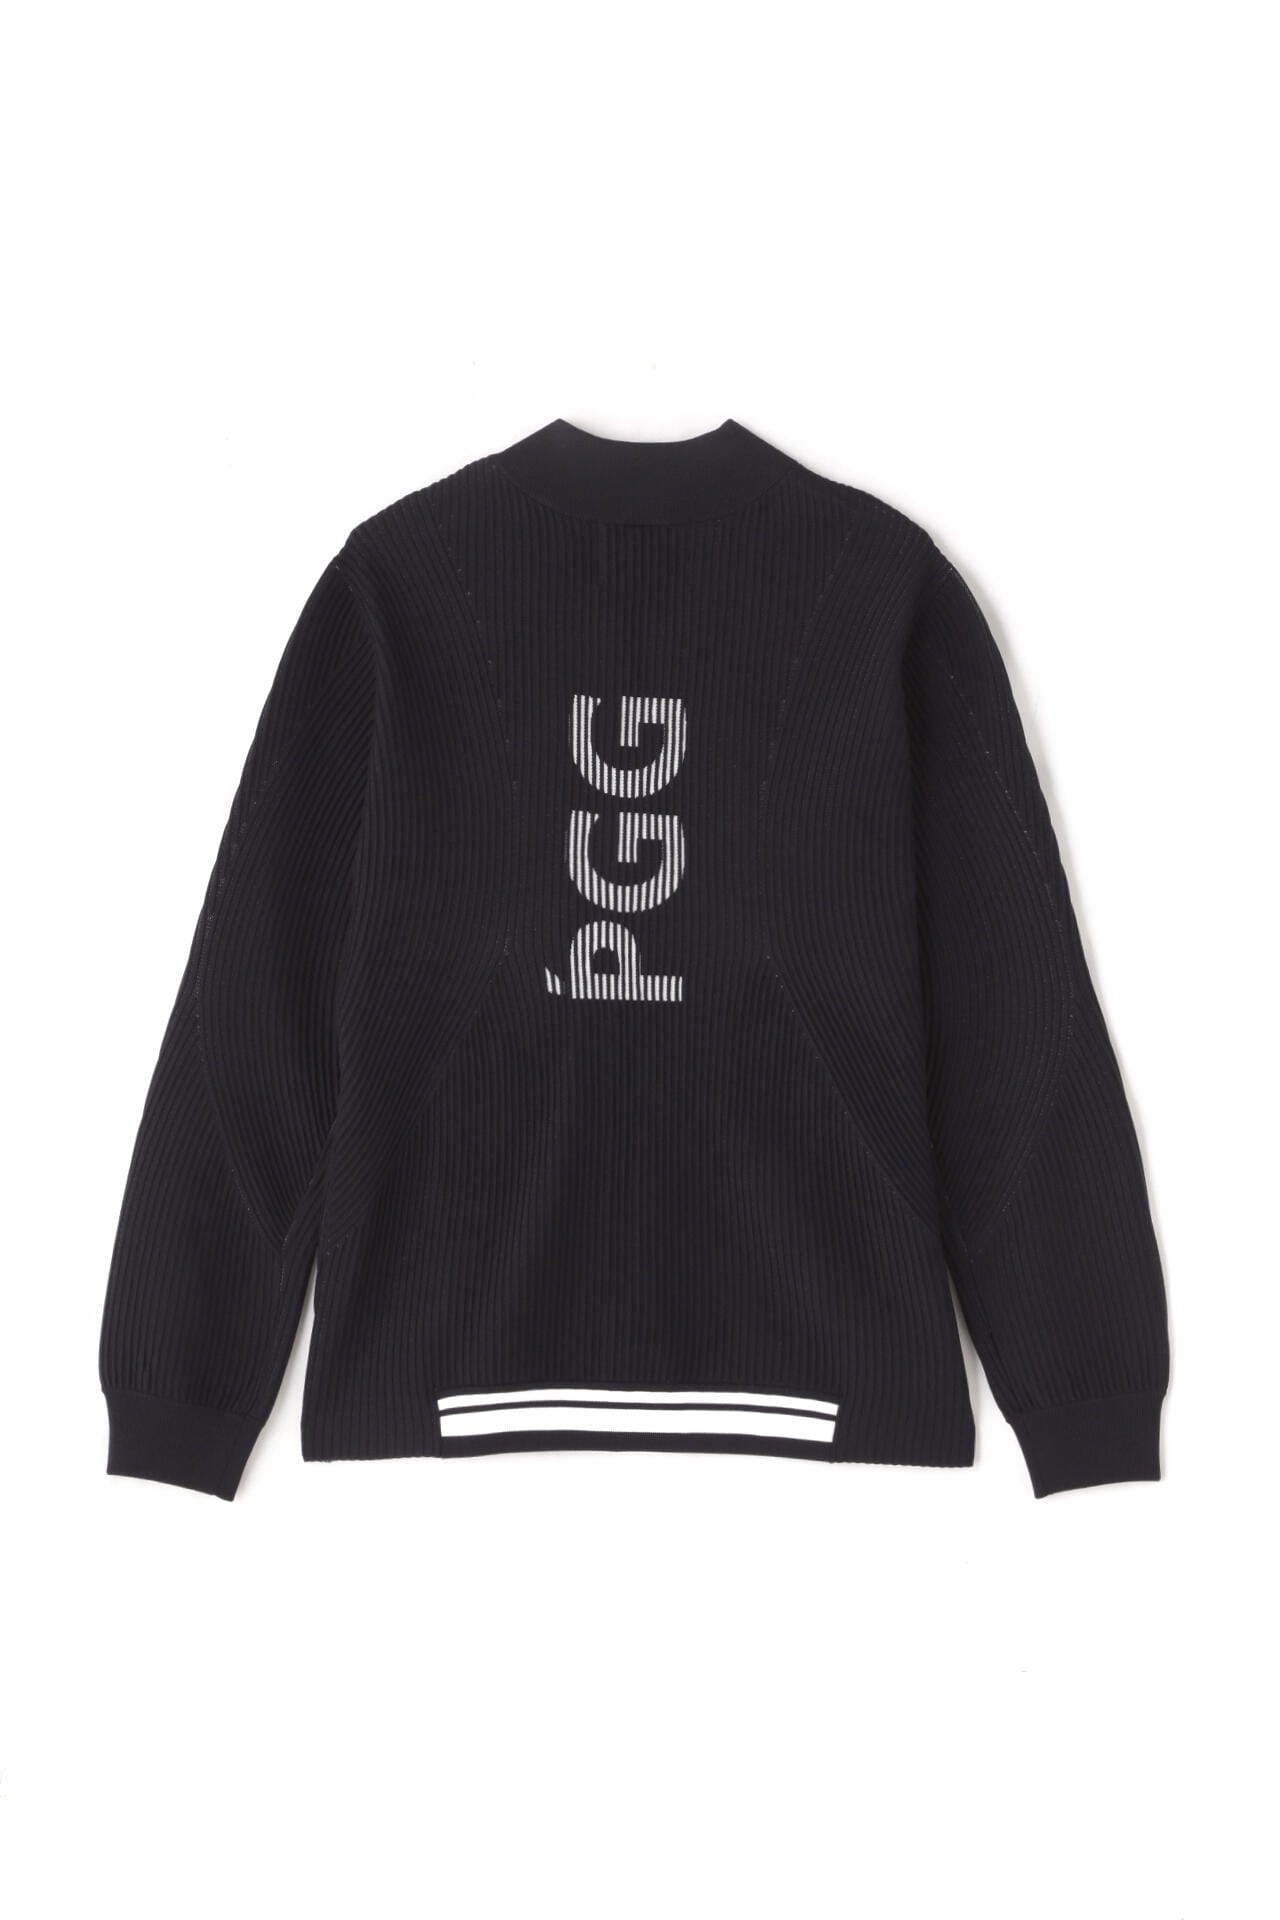 PGG(ピージージー) ポリエステルヤーン フルジップジャケット メンズ